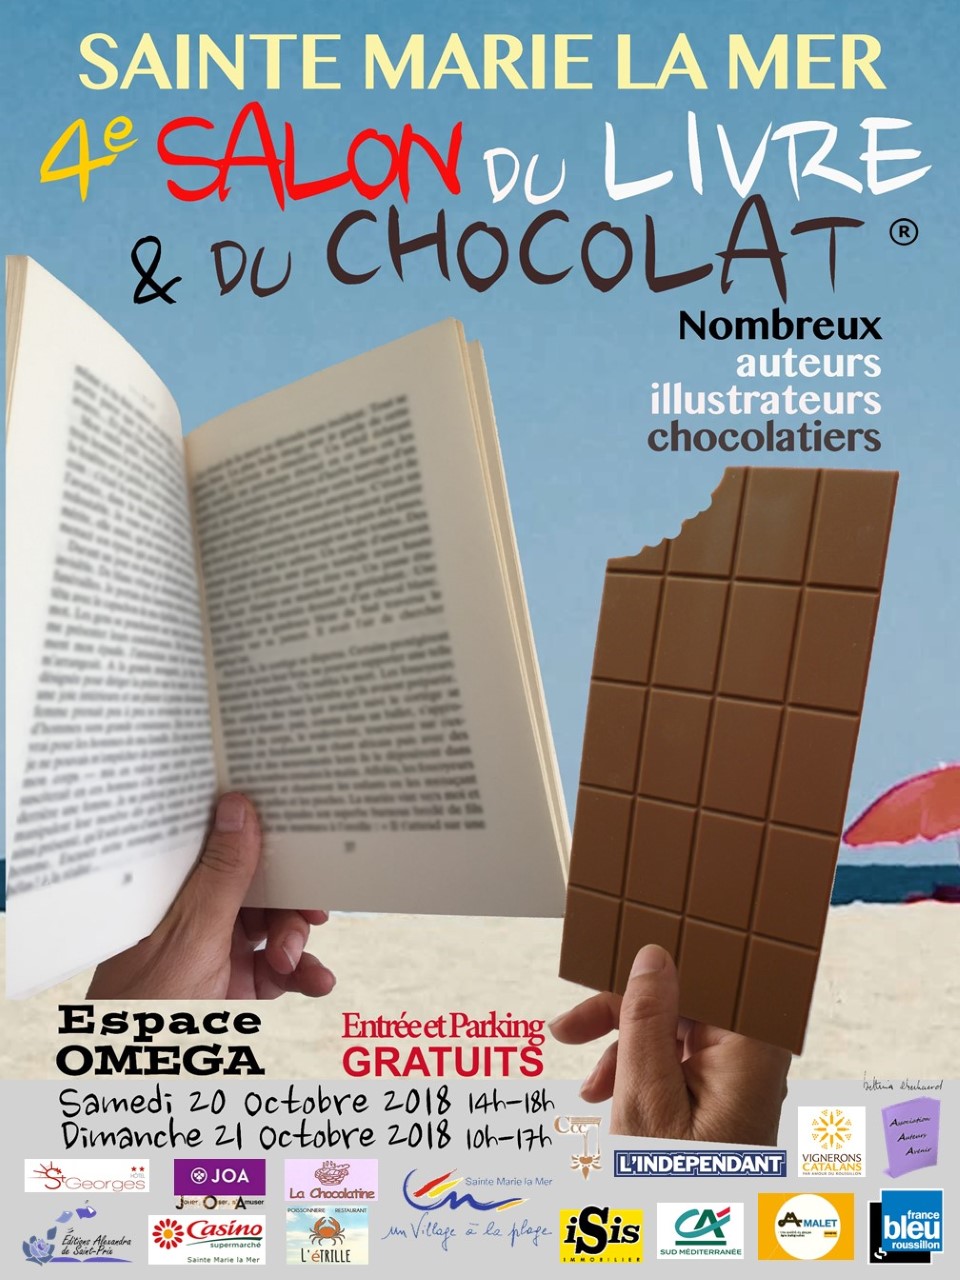 Thumbnail affiche 2018 4e salon du livre et du chocolat